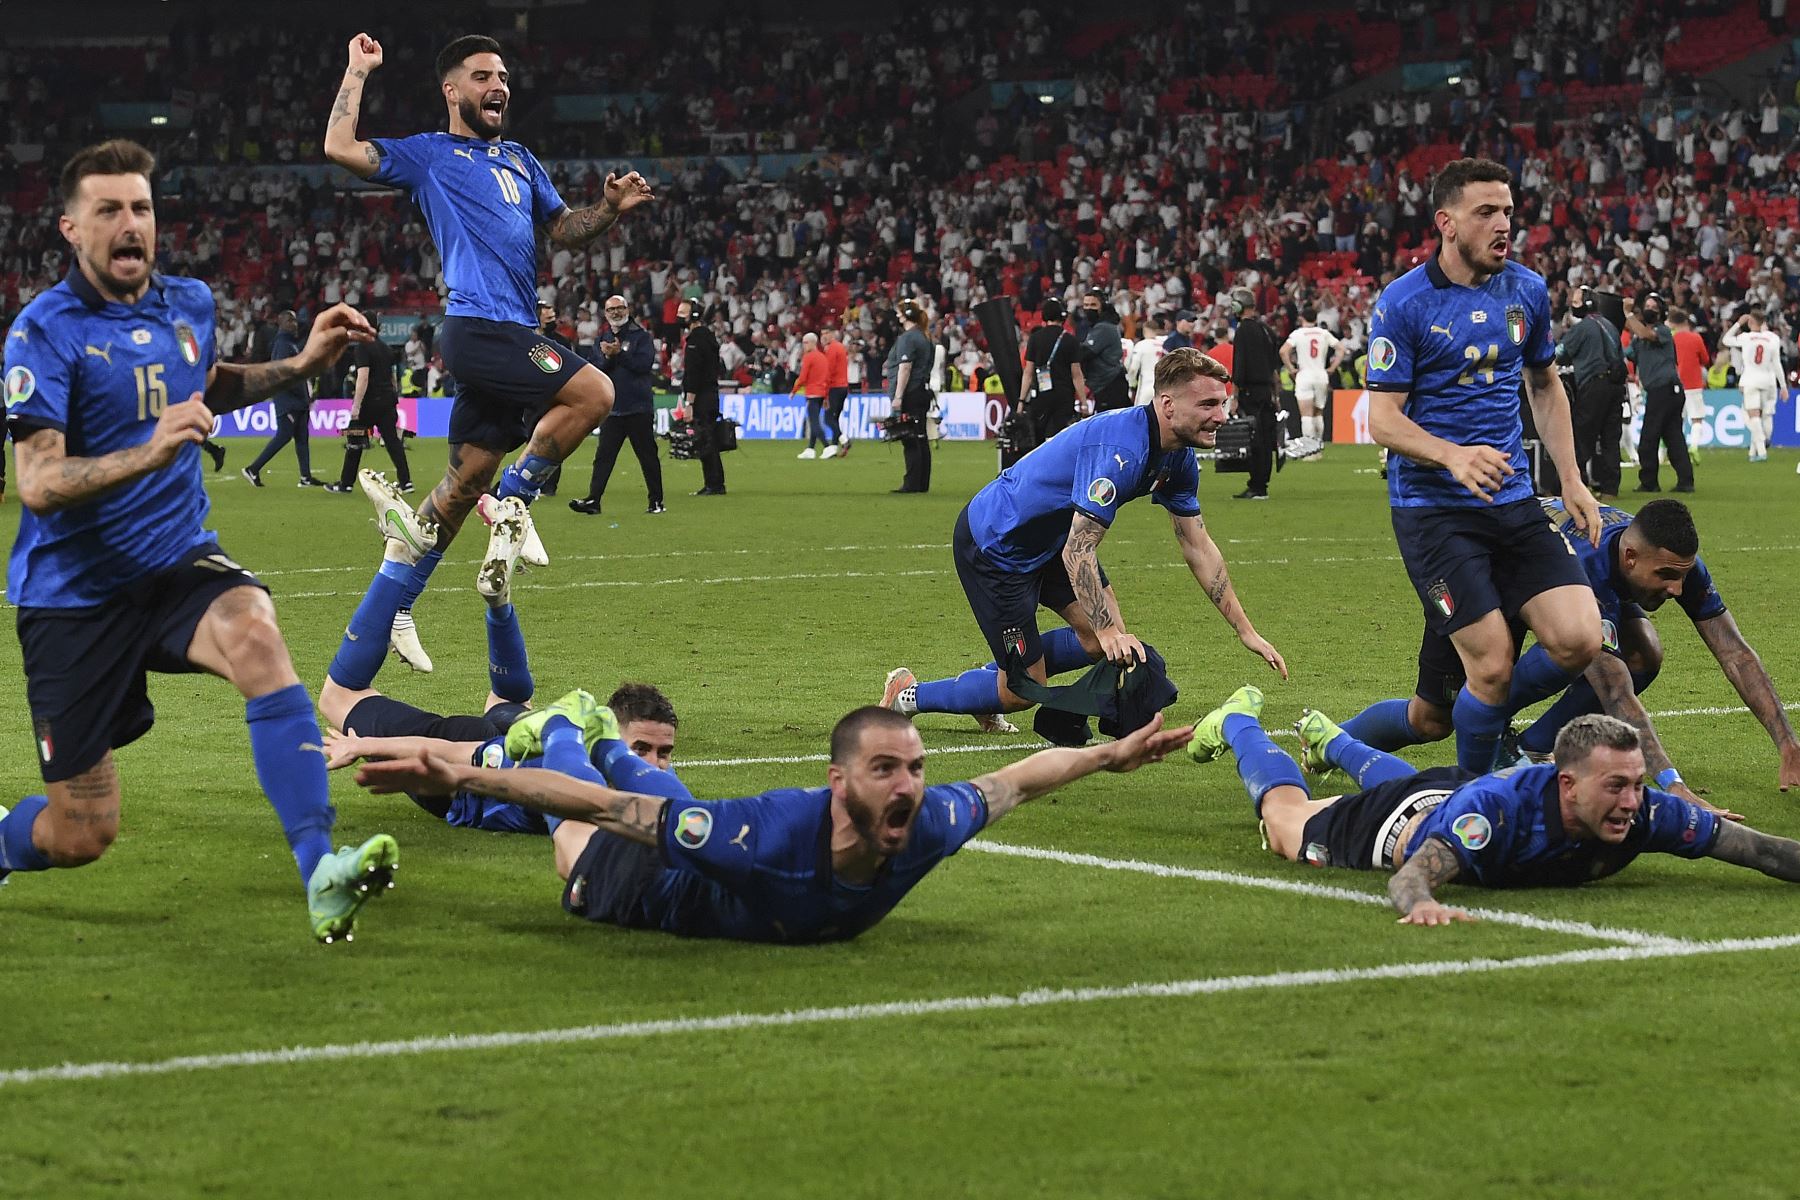 Los jugadores de Italia celebran después de ganar el partido de fútbol final de la UEFA EURO 2020 entre Italia e Inglaterra en el estadio de Wembley en Londres el 11 de julio de 2021. Foto: AFP